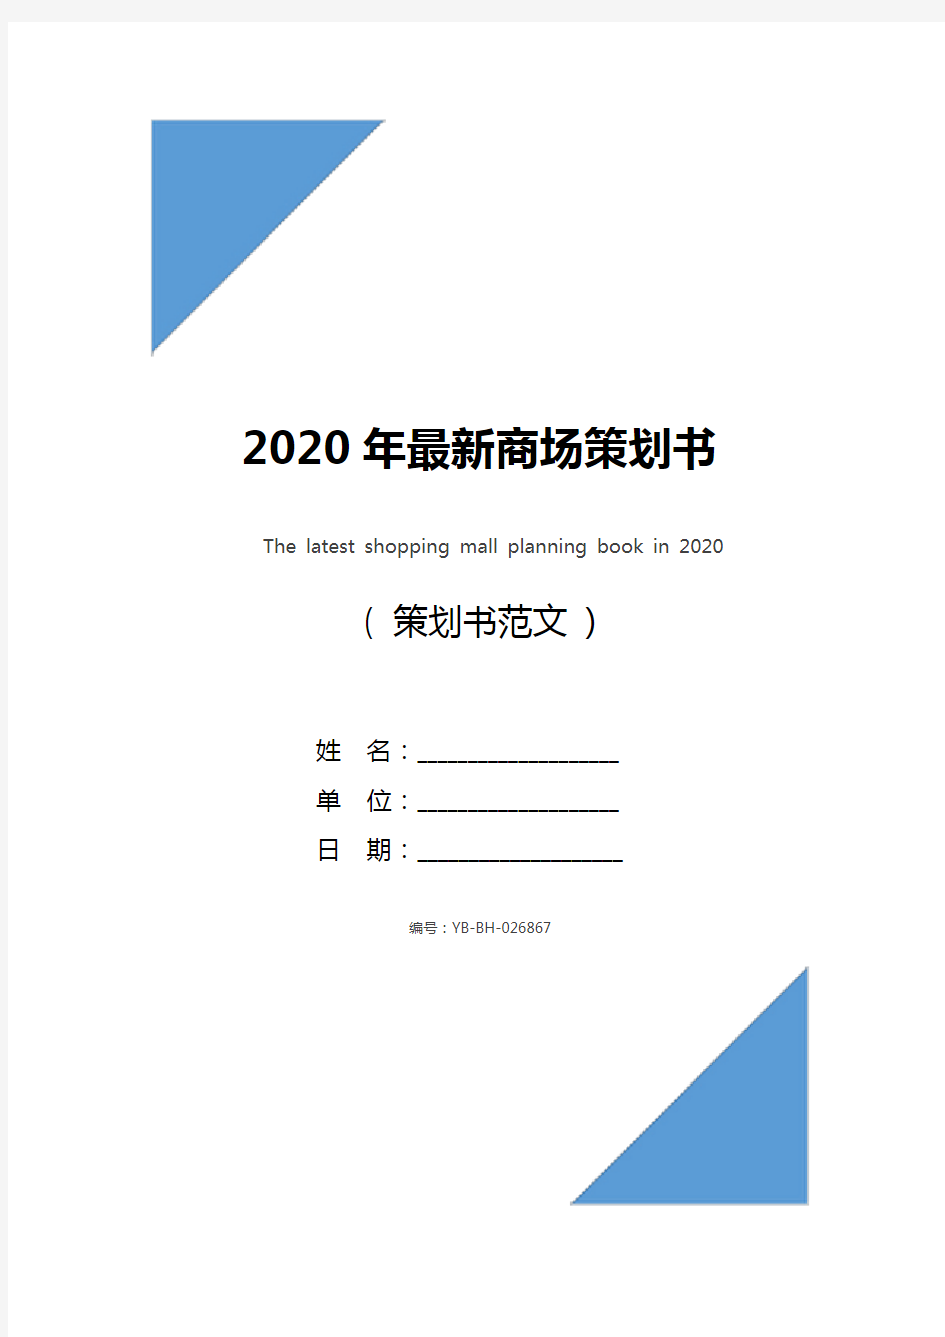 2020年最新商场策划书